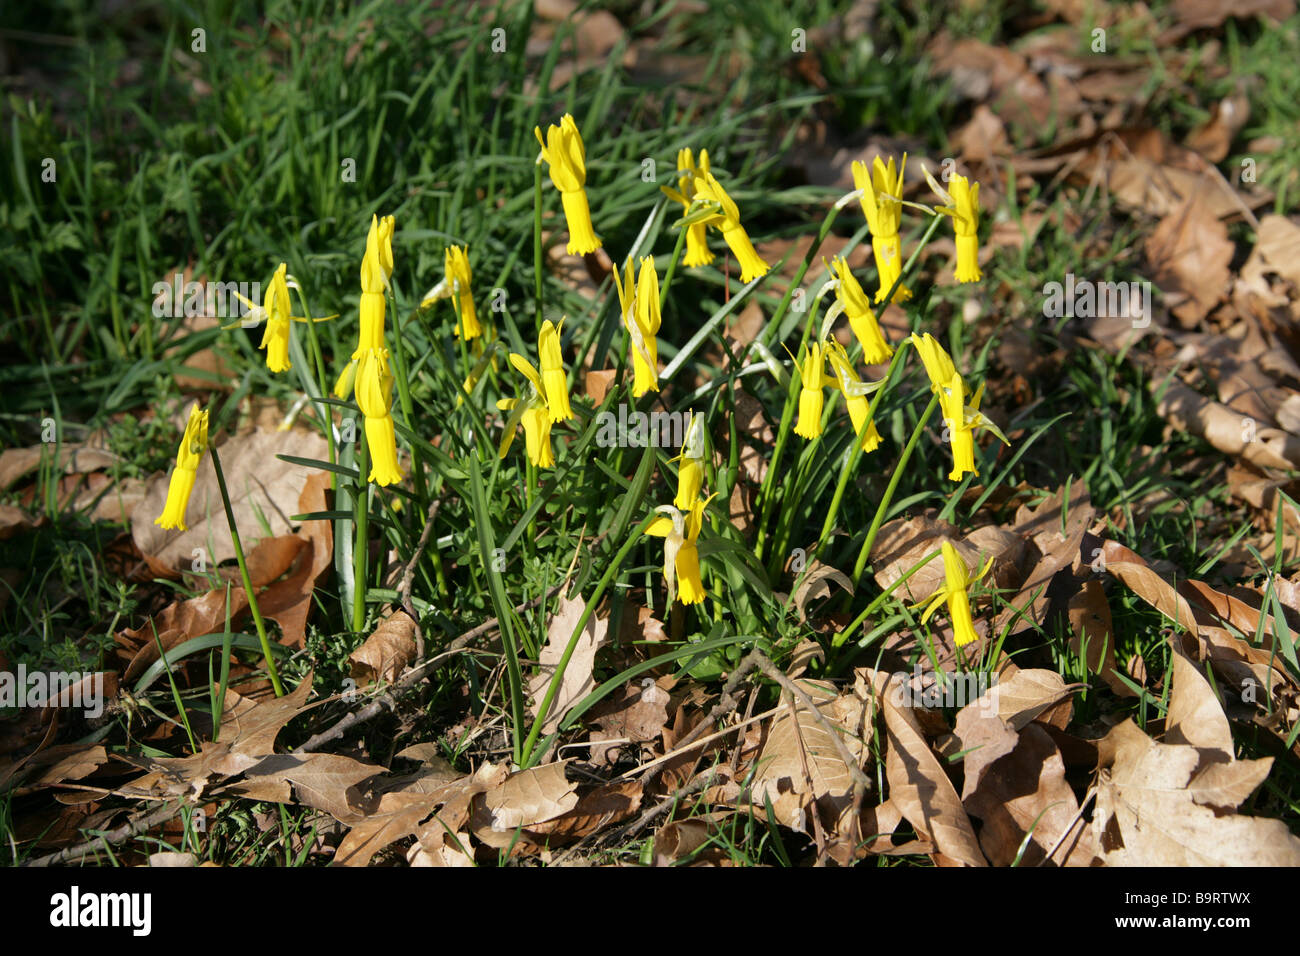 Blühenden Alpenveilchen Narzisse, Narcissus Cyclamineus, Amaryllisgewächse Stockfoto